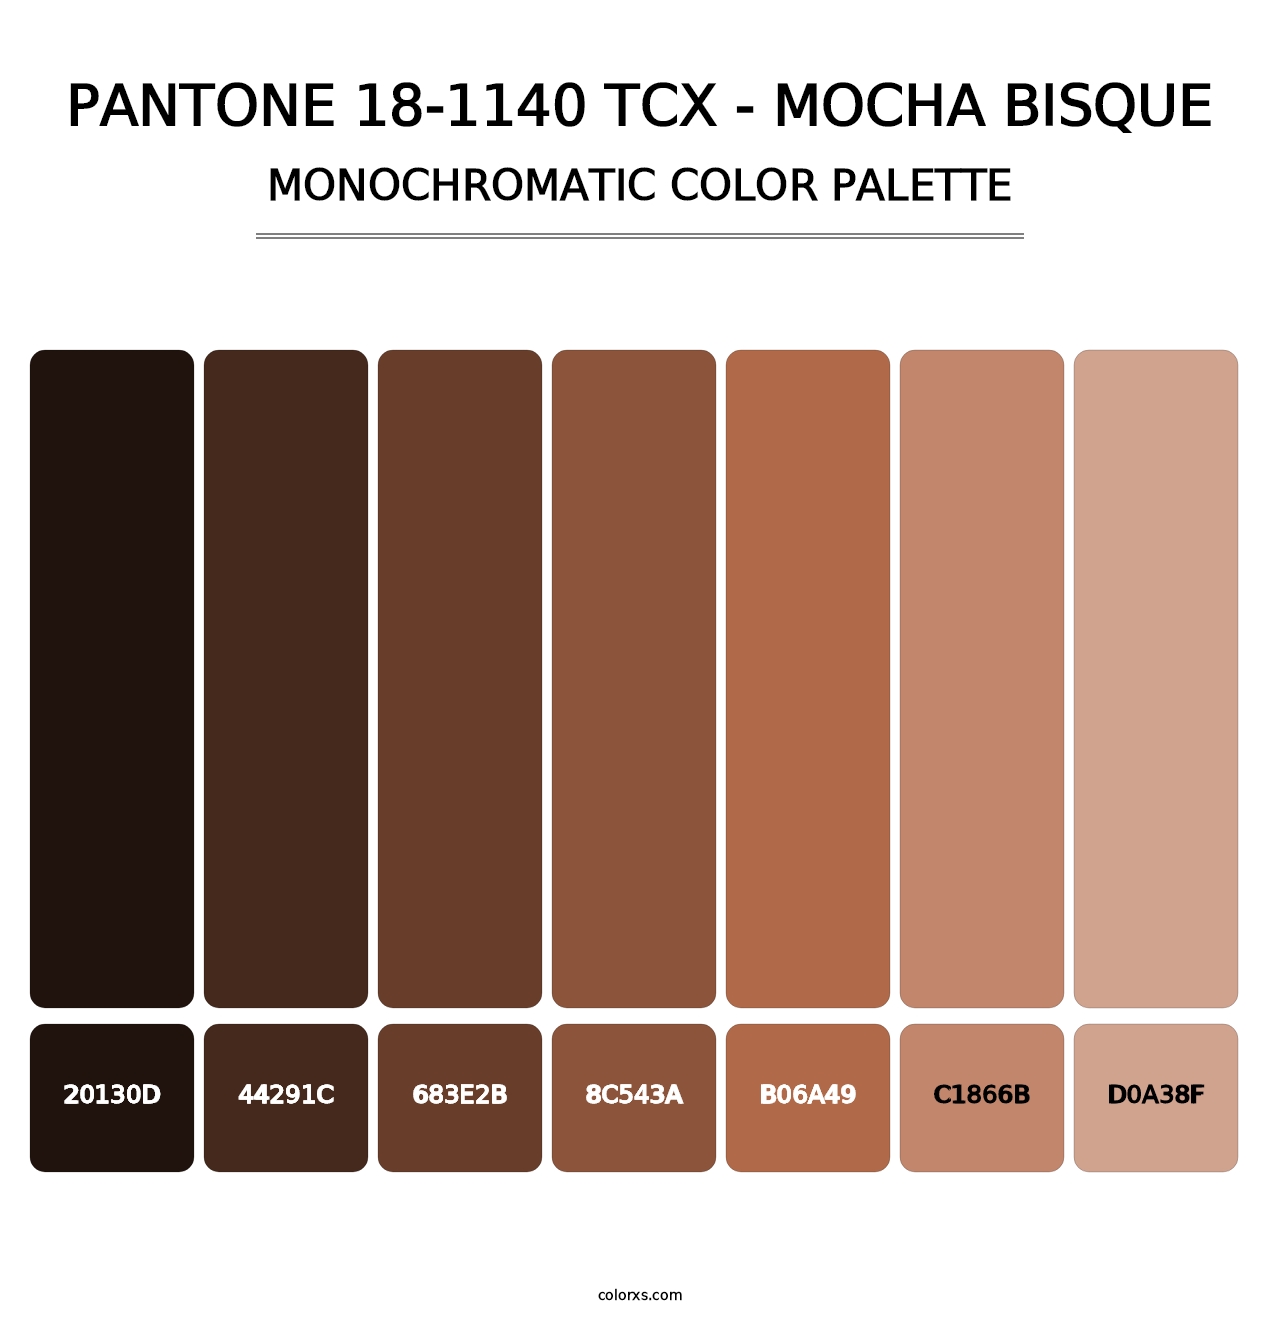 PANTONE 18-1140 TCX - Mocha Bisque - Monochromatic Color Palette